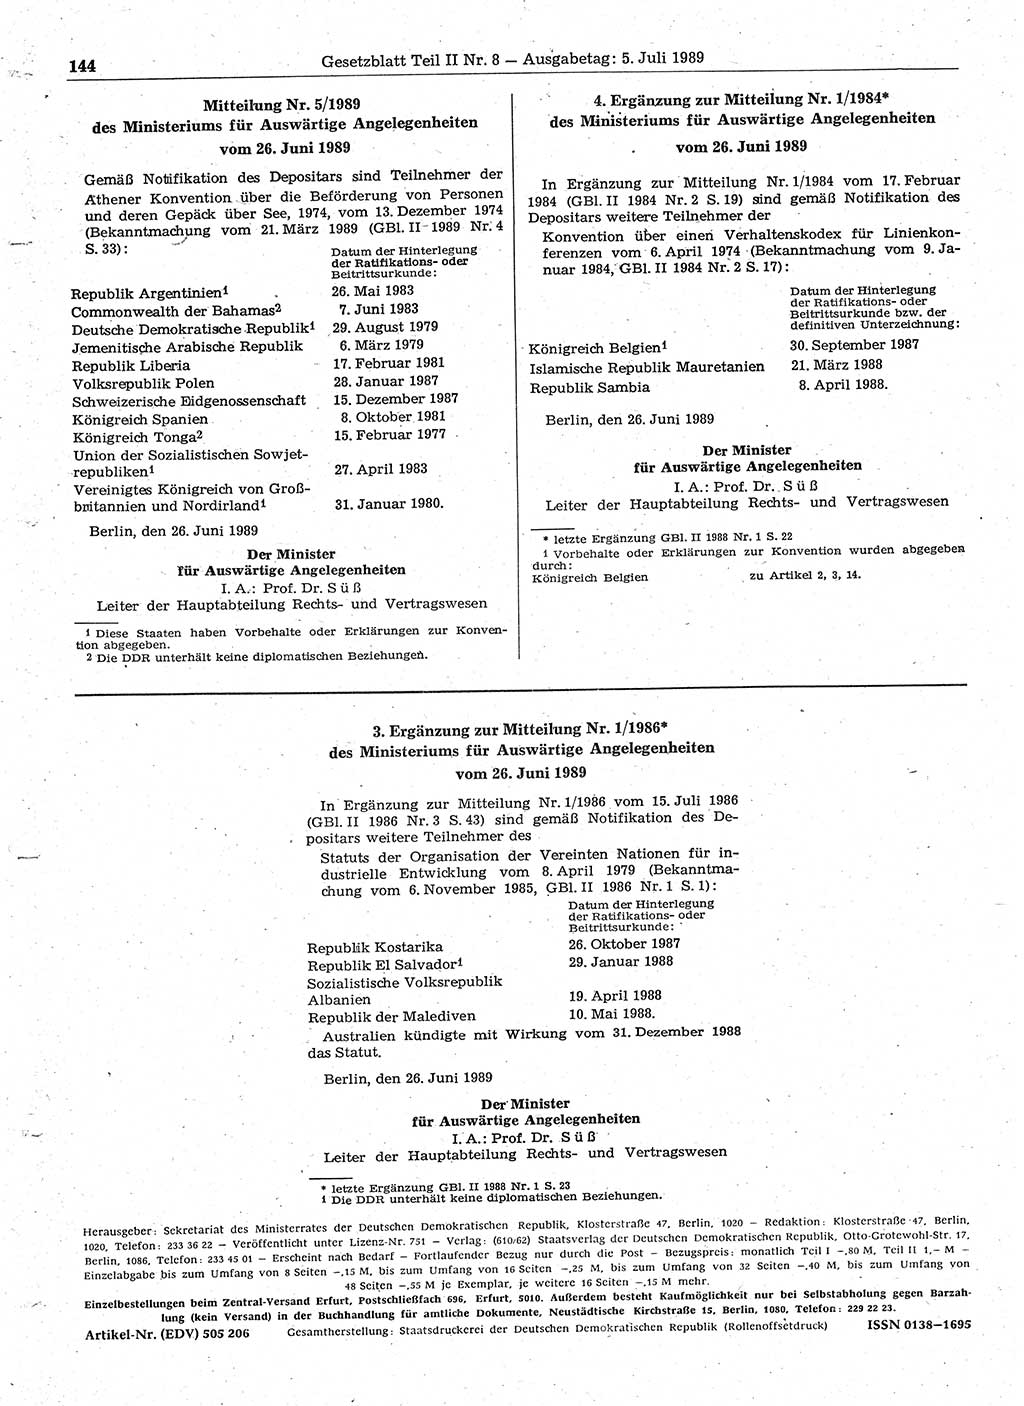 Gesetzblatt (GBl.) der Deutschen Demokratischen Republik (DDR) Teil ⅠⅠ 1989, Seite 144 (GBl. DDR ⅠⅠ 1989, S. 144)